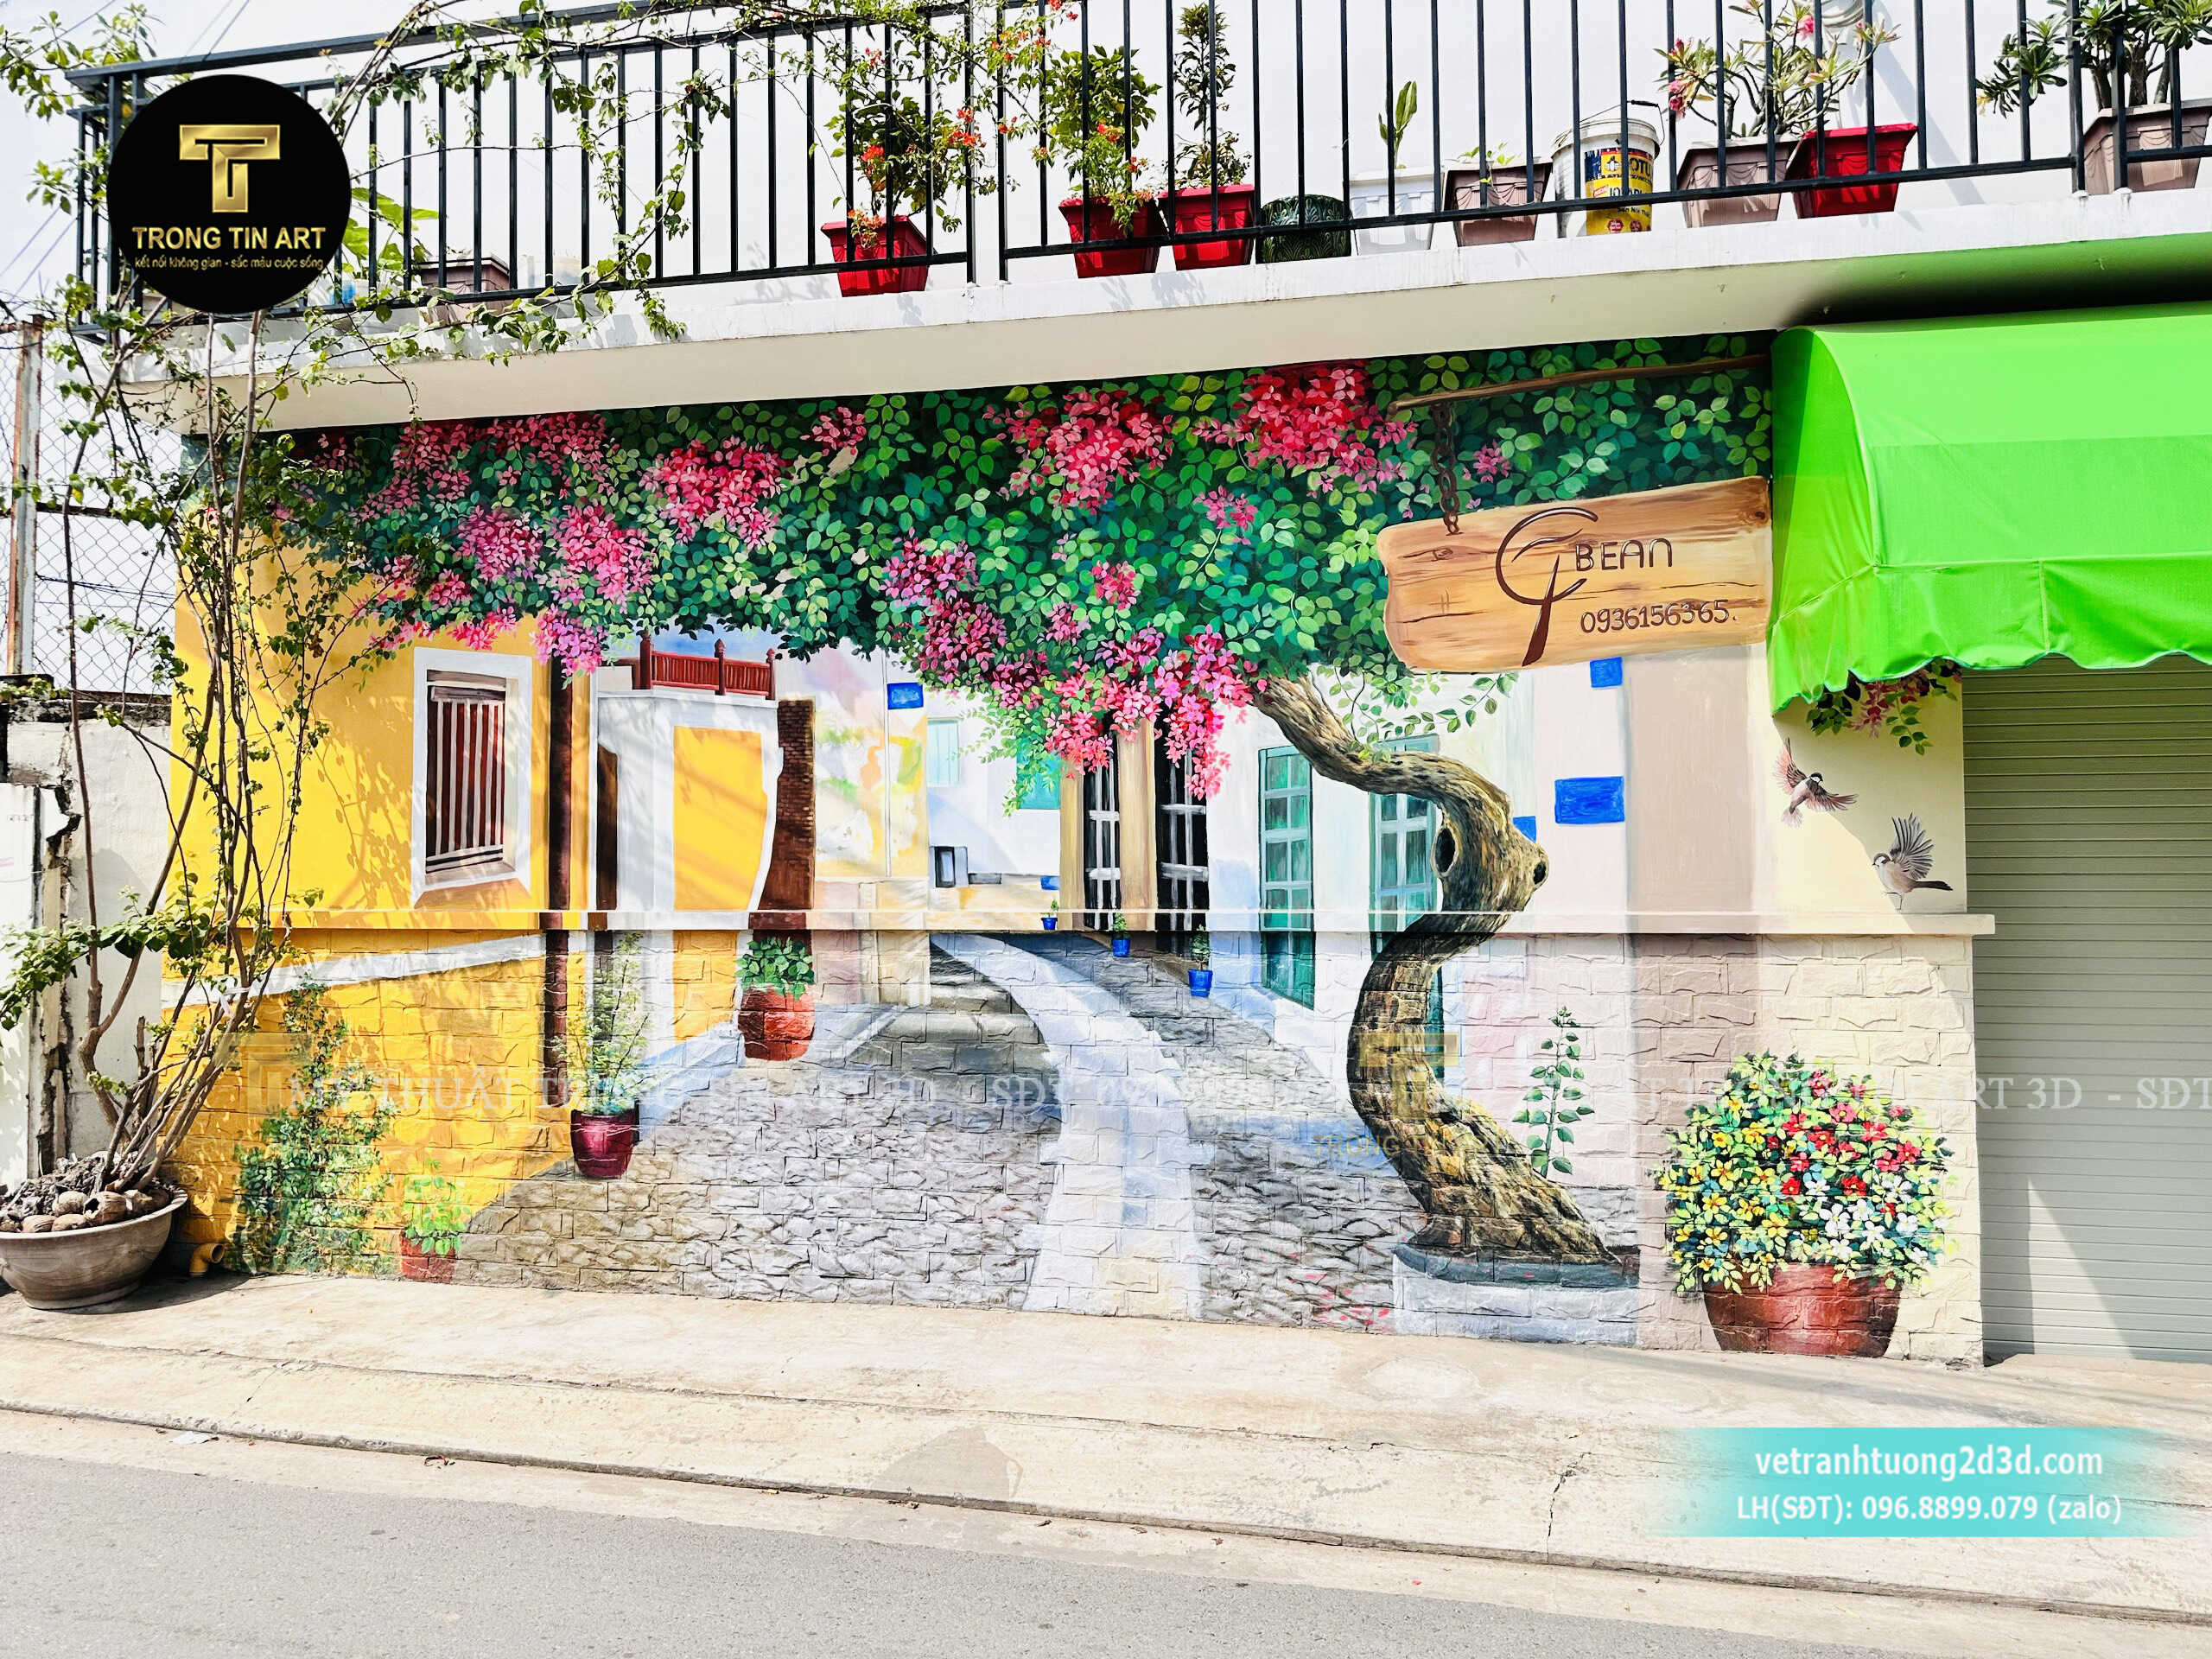 Vẽ tranh quán cafe phố cổ hoa giấy,tranh hoa giấy,tranh tường quán cafe,tranh tường phố cổ hội an,tranh tường quán cà phê,tranh quán coffee